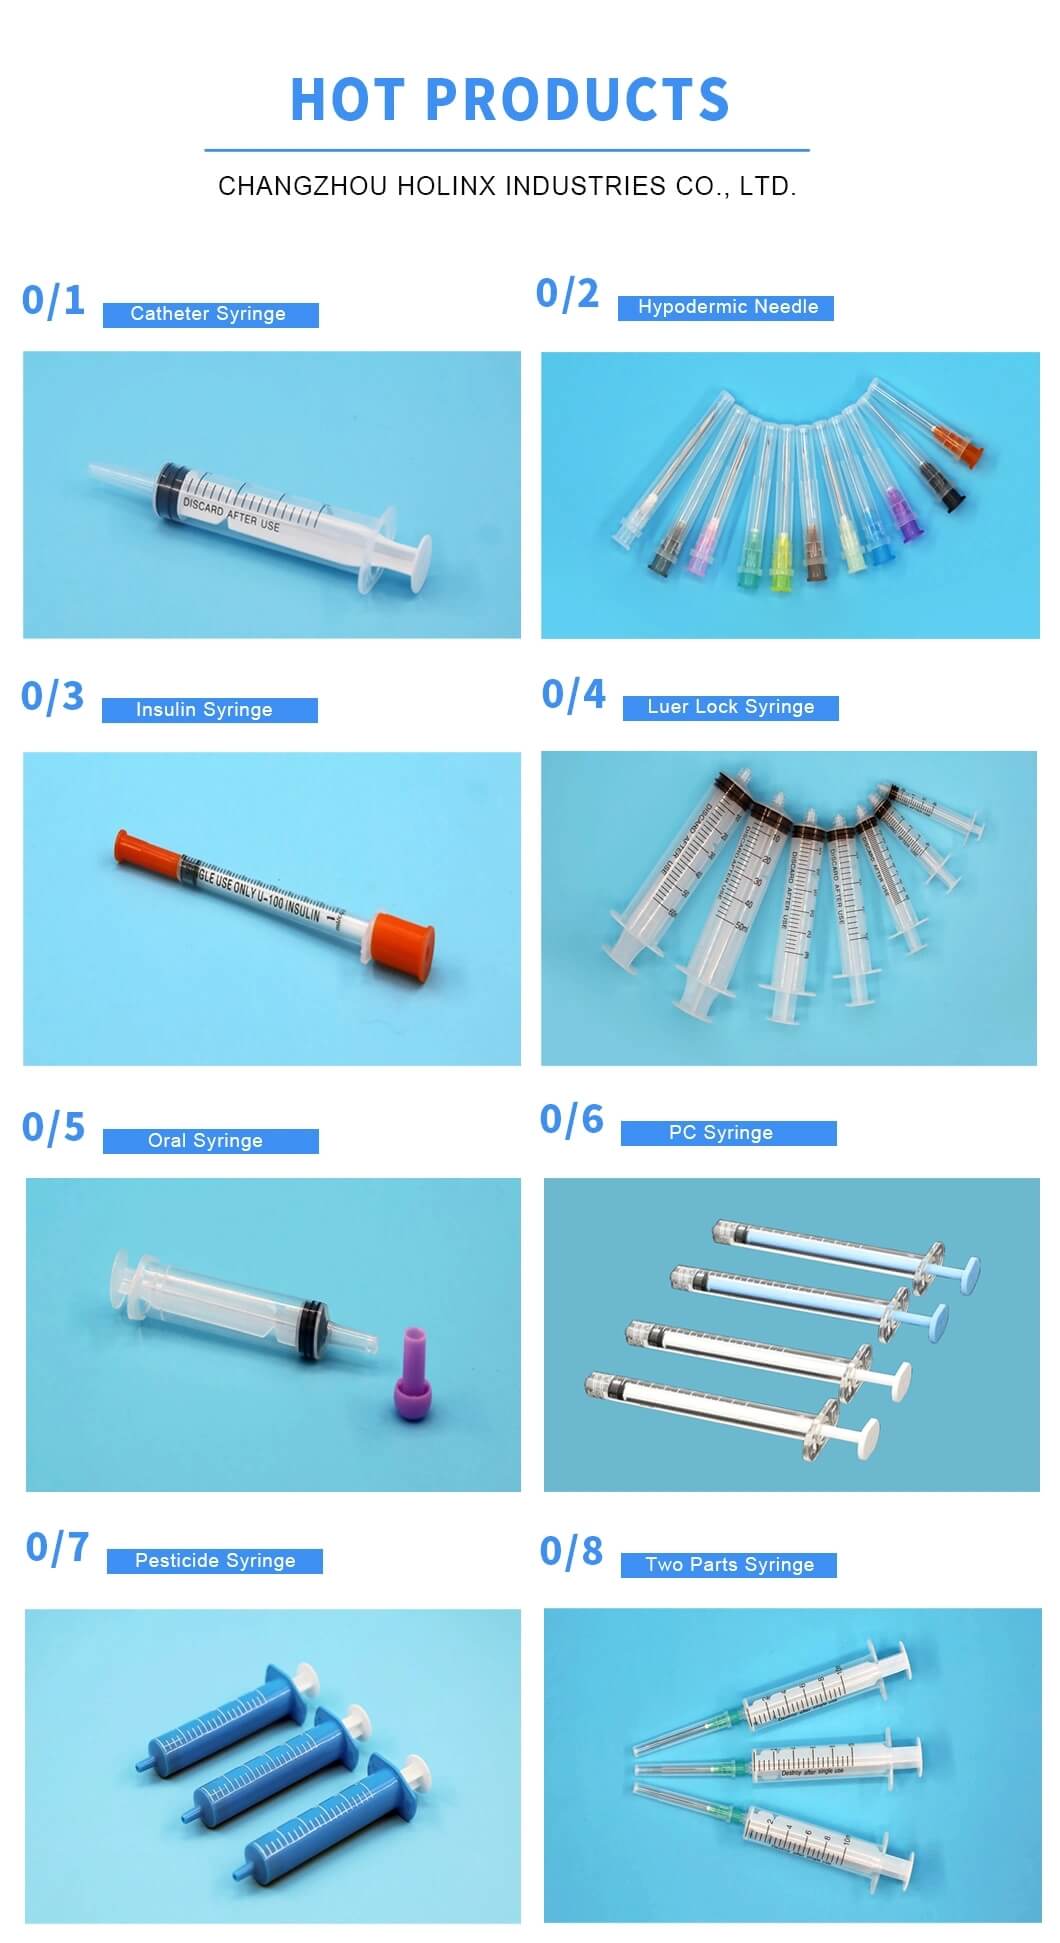 10ml Luer Lock Syringe without Needle